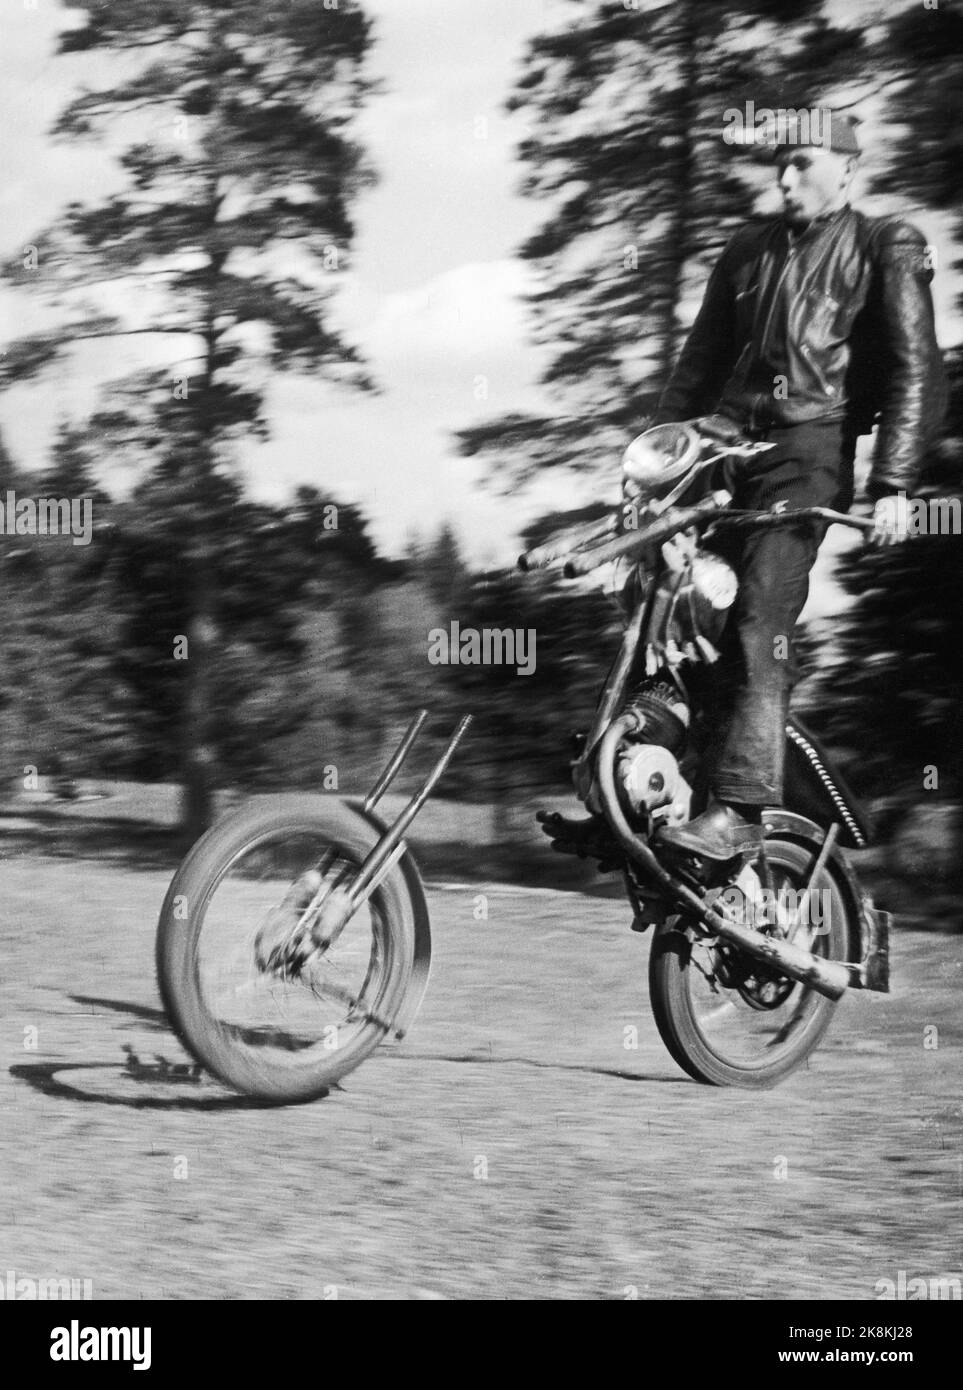 Alunda, Svezia 1954 quando i motociclisti ad Alunda, in Svezia, tenevano una piccola competizione privata, uno dei colpi cubici era quello di fare quello che gli svedesi chiamavano "partenza della cavalleria”. Inoltre ha ottenuto la motocicletta per rubare realmente bene, ma allora non è andato così bene perché la ruota anteriore ha lasciato la macchina e ha preso una passeggiata da solo. Un uomo con macchina fotografica, Torsten Malmberg, ha ottenuto una foto che ha ottenuto molto meglio di quanto pensasse, e in tutta la Svezia la gente ha ottenuto un buon sorriso. Strano con quella gioia! Foto; Torsten Malmberg / corrente / NTB LOC fisico. Corrente n. 25- 1954 luci Streif Foto Stock